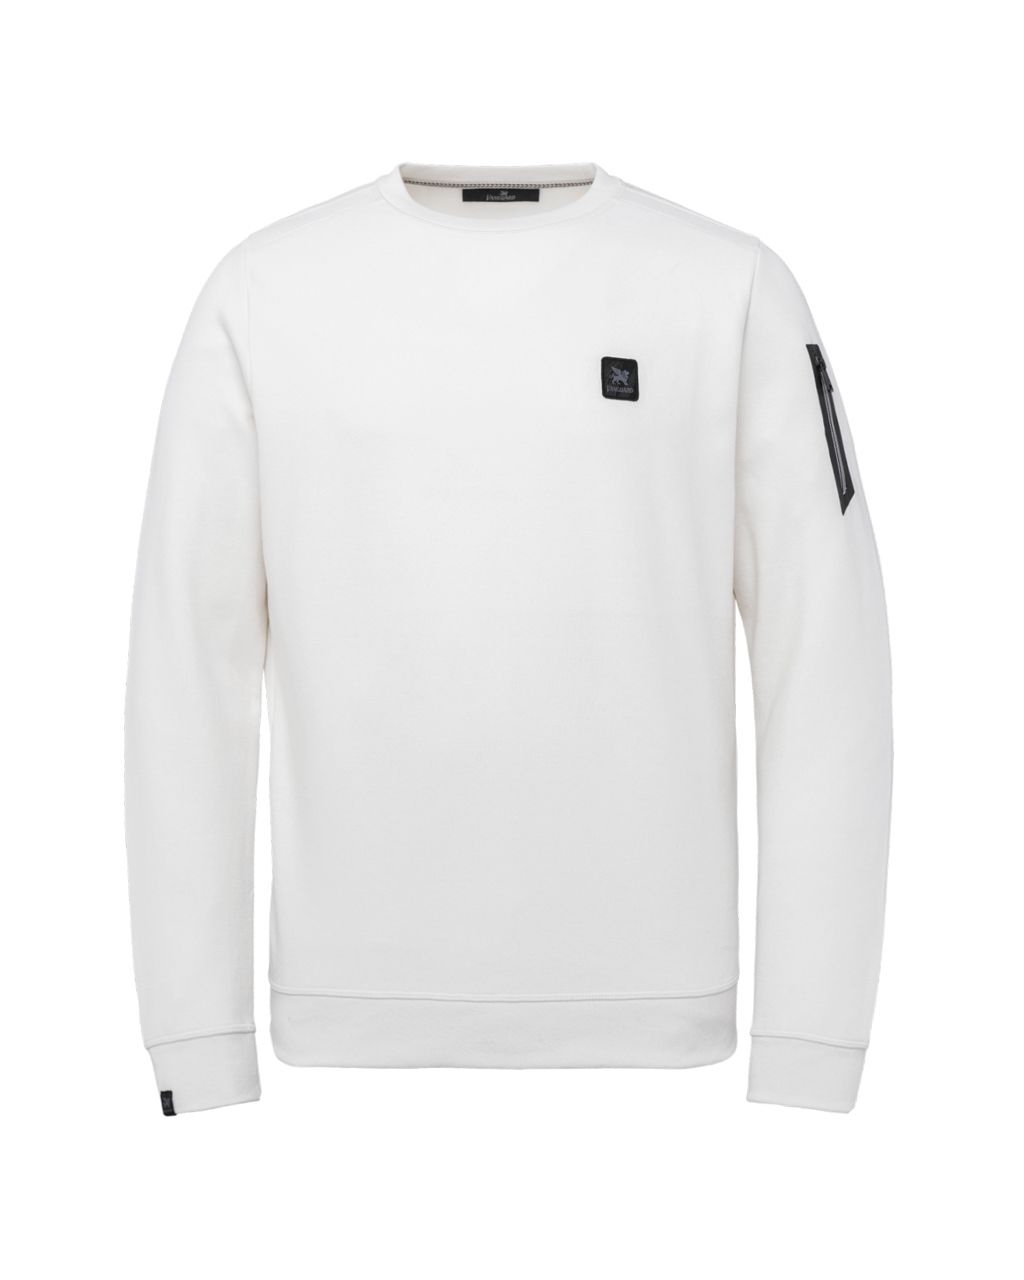 Vanguard Sweater Wit 074225-001-L